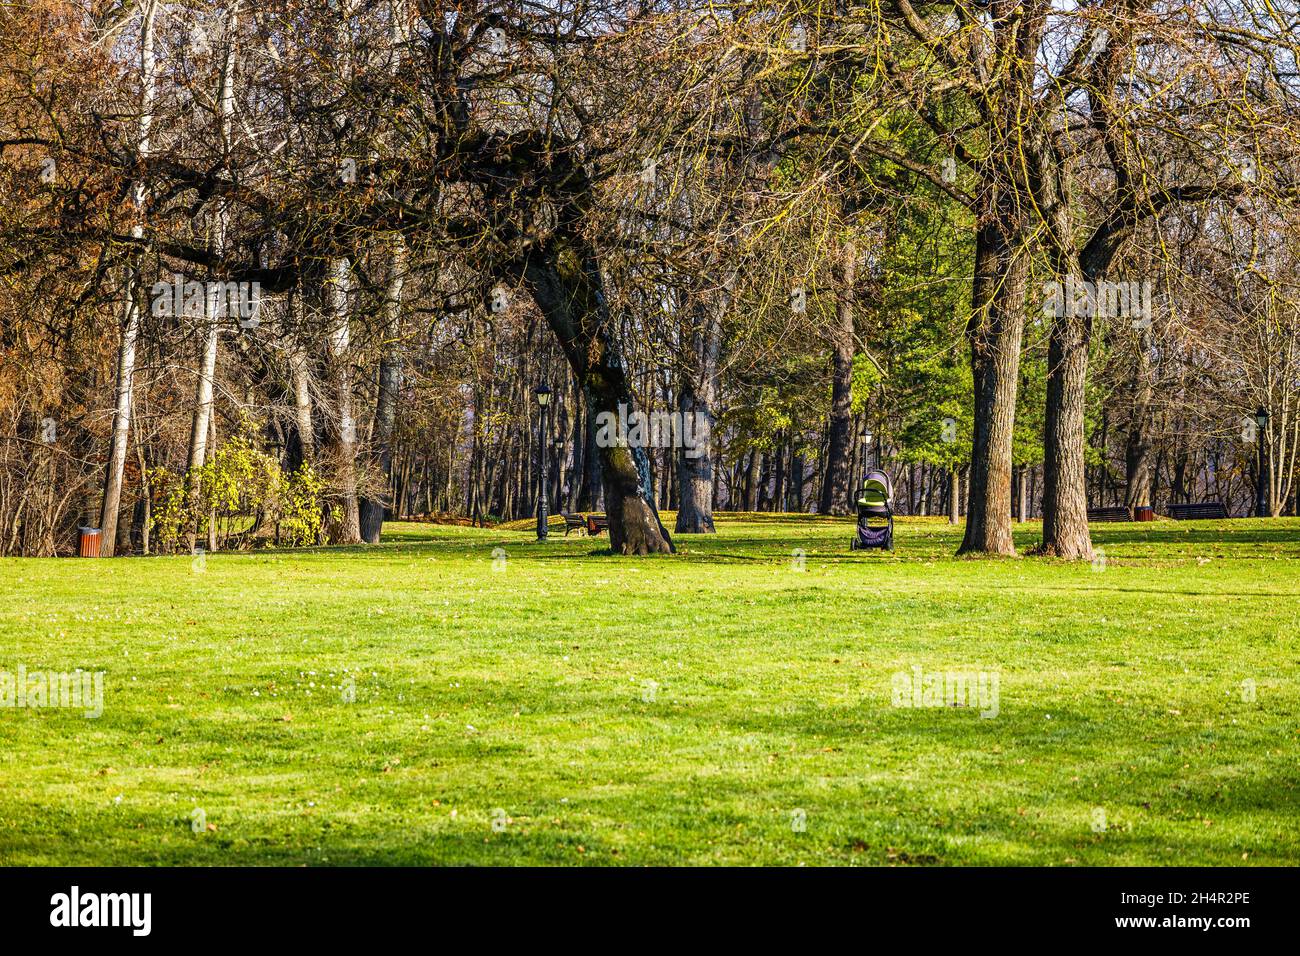 Gruppe von grünen Bäumen auf einem glatten grünen Rasen im gepflegten Garten des Parks Stockfoto